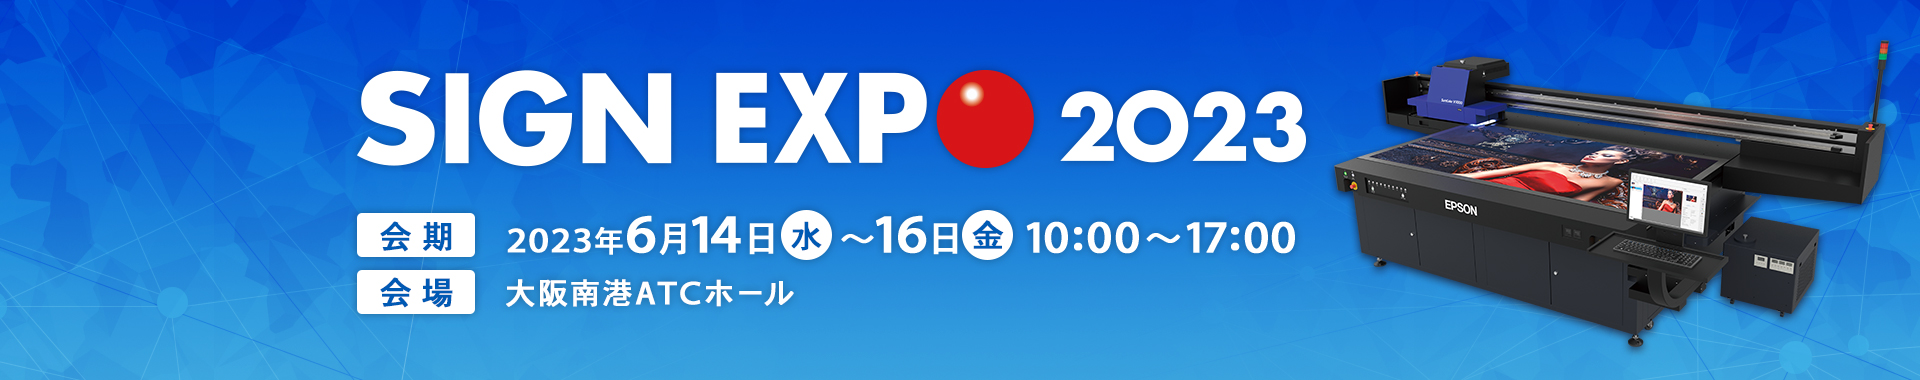 SIGN EXPO 2023 会期 2023年6月14日（水）～16日（金）10:00 ～17:00 会場 大阪南港ATCホール